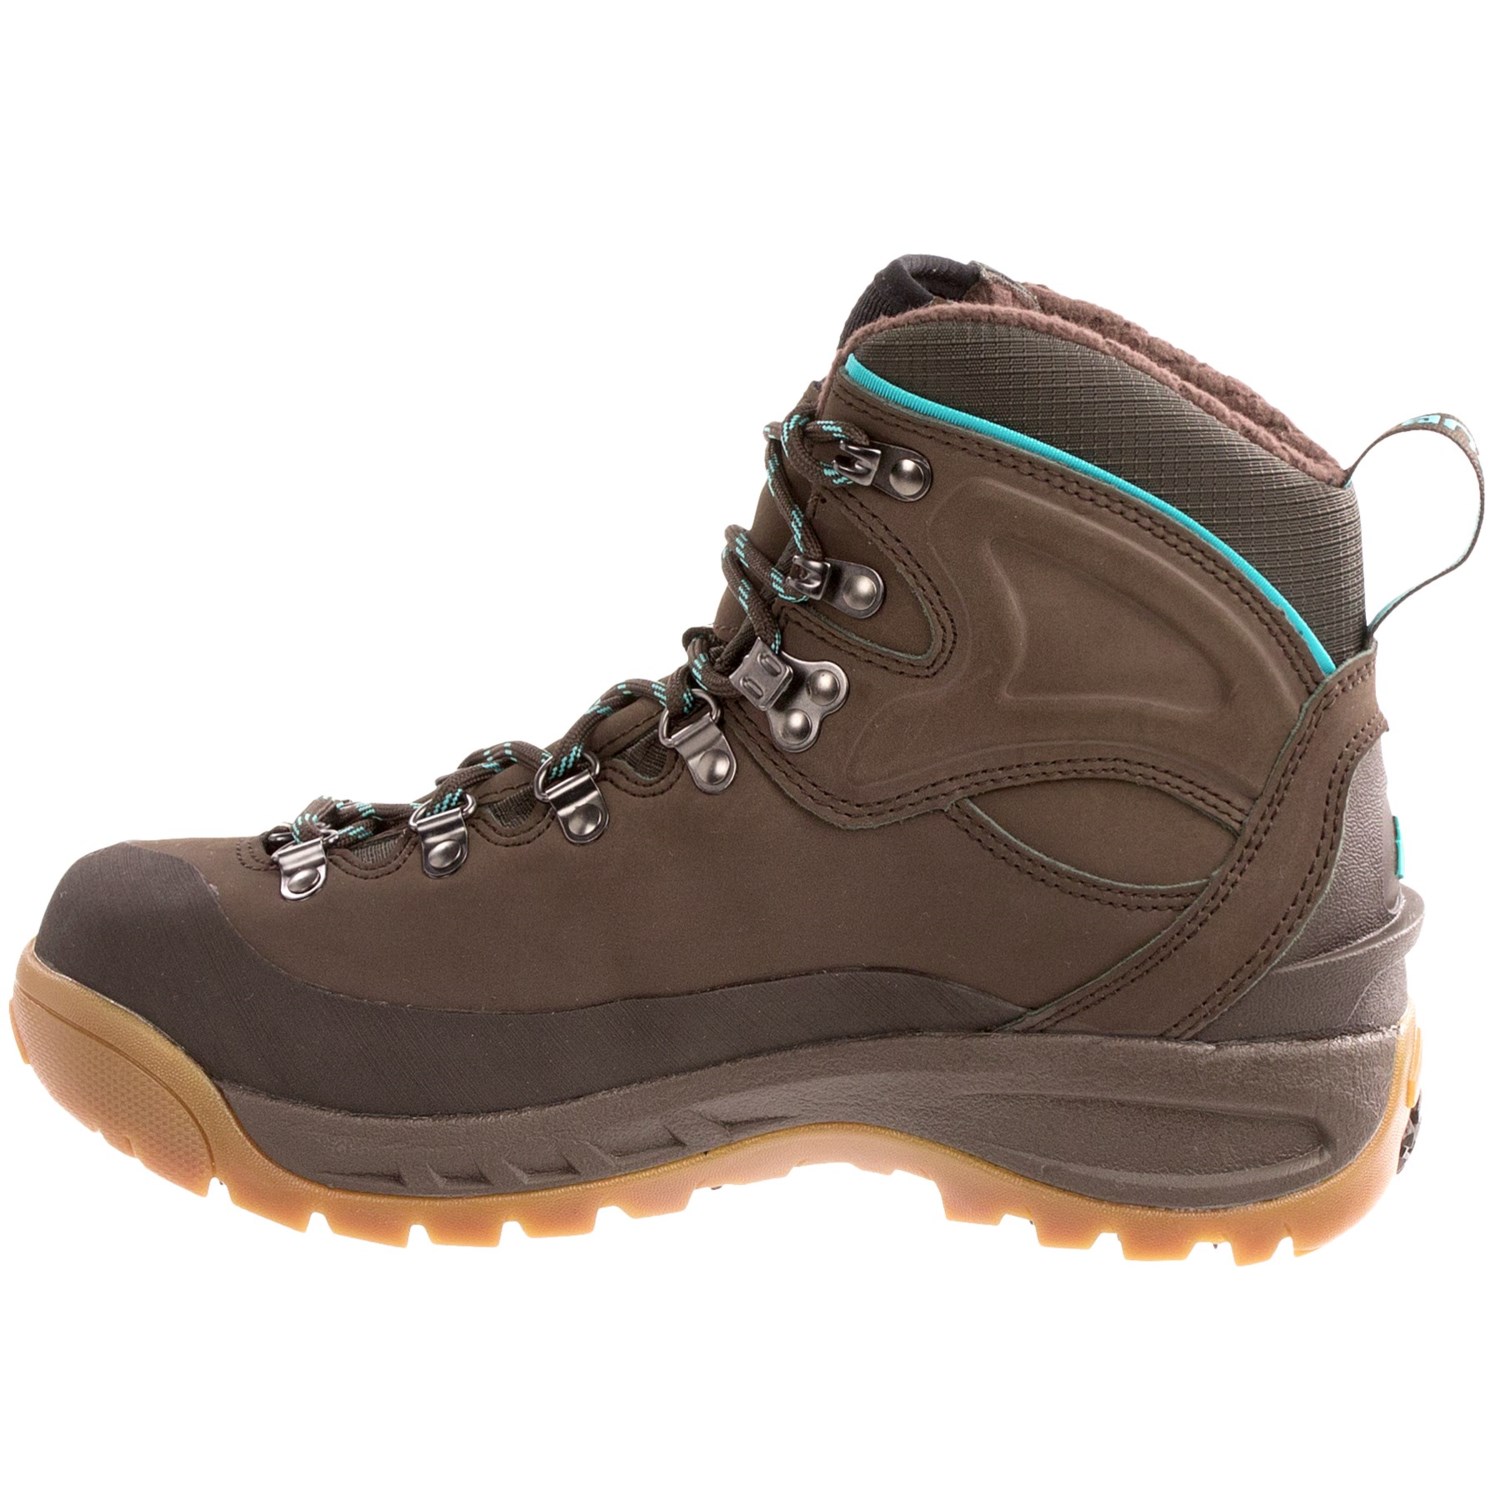 Vasque Snowblime Snow Boots (For Women) 8889X - Save 60%